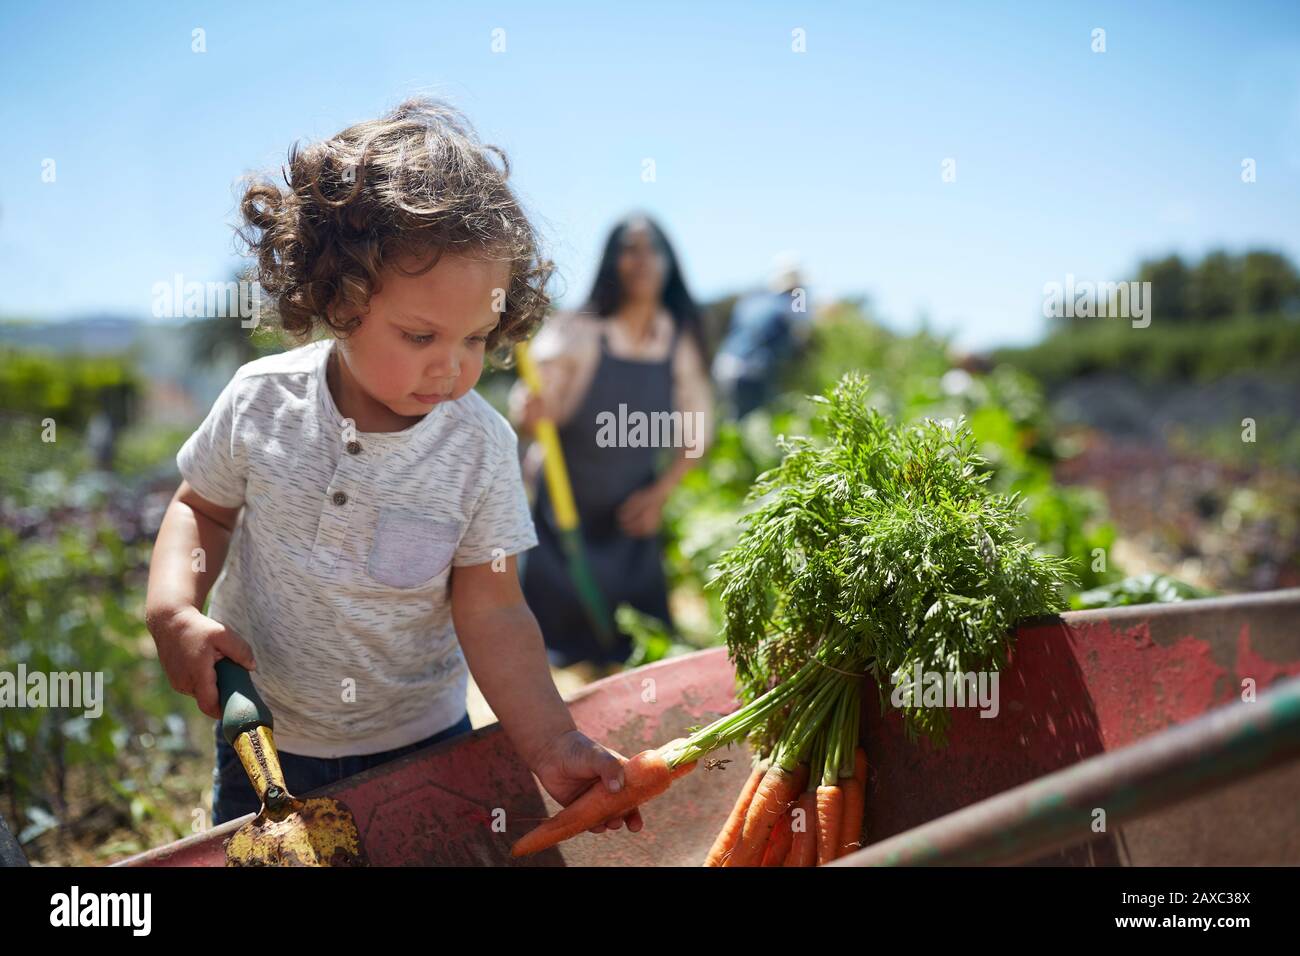 Toddler boy harvesting carrots in sunny vegetable garden Stock Photo